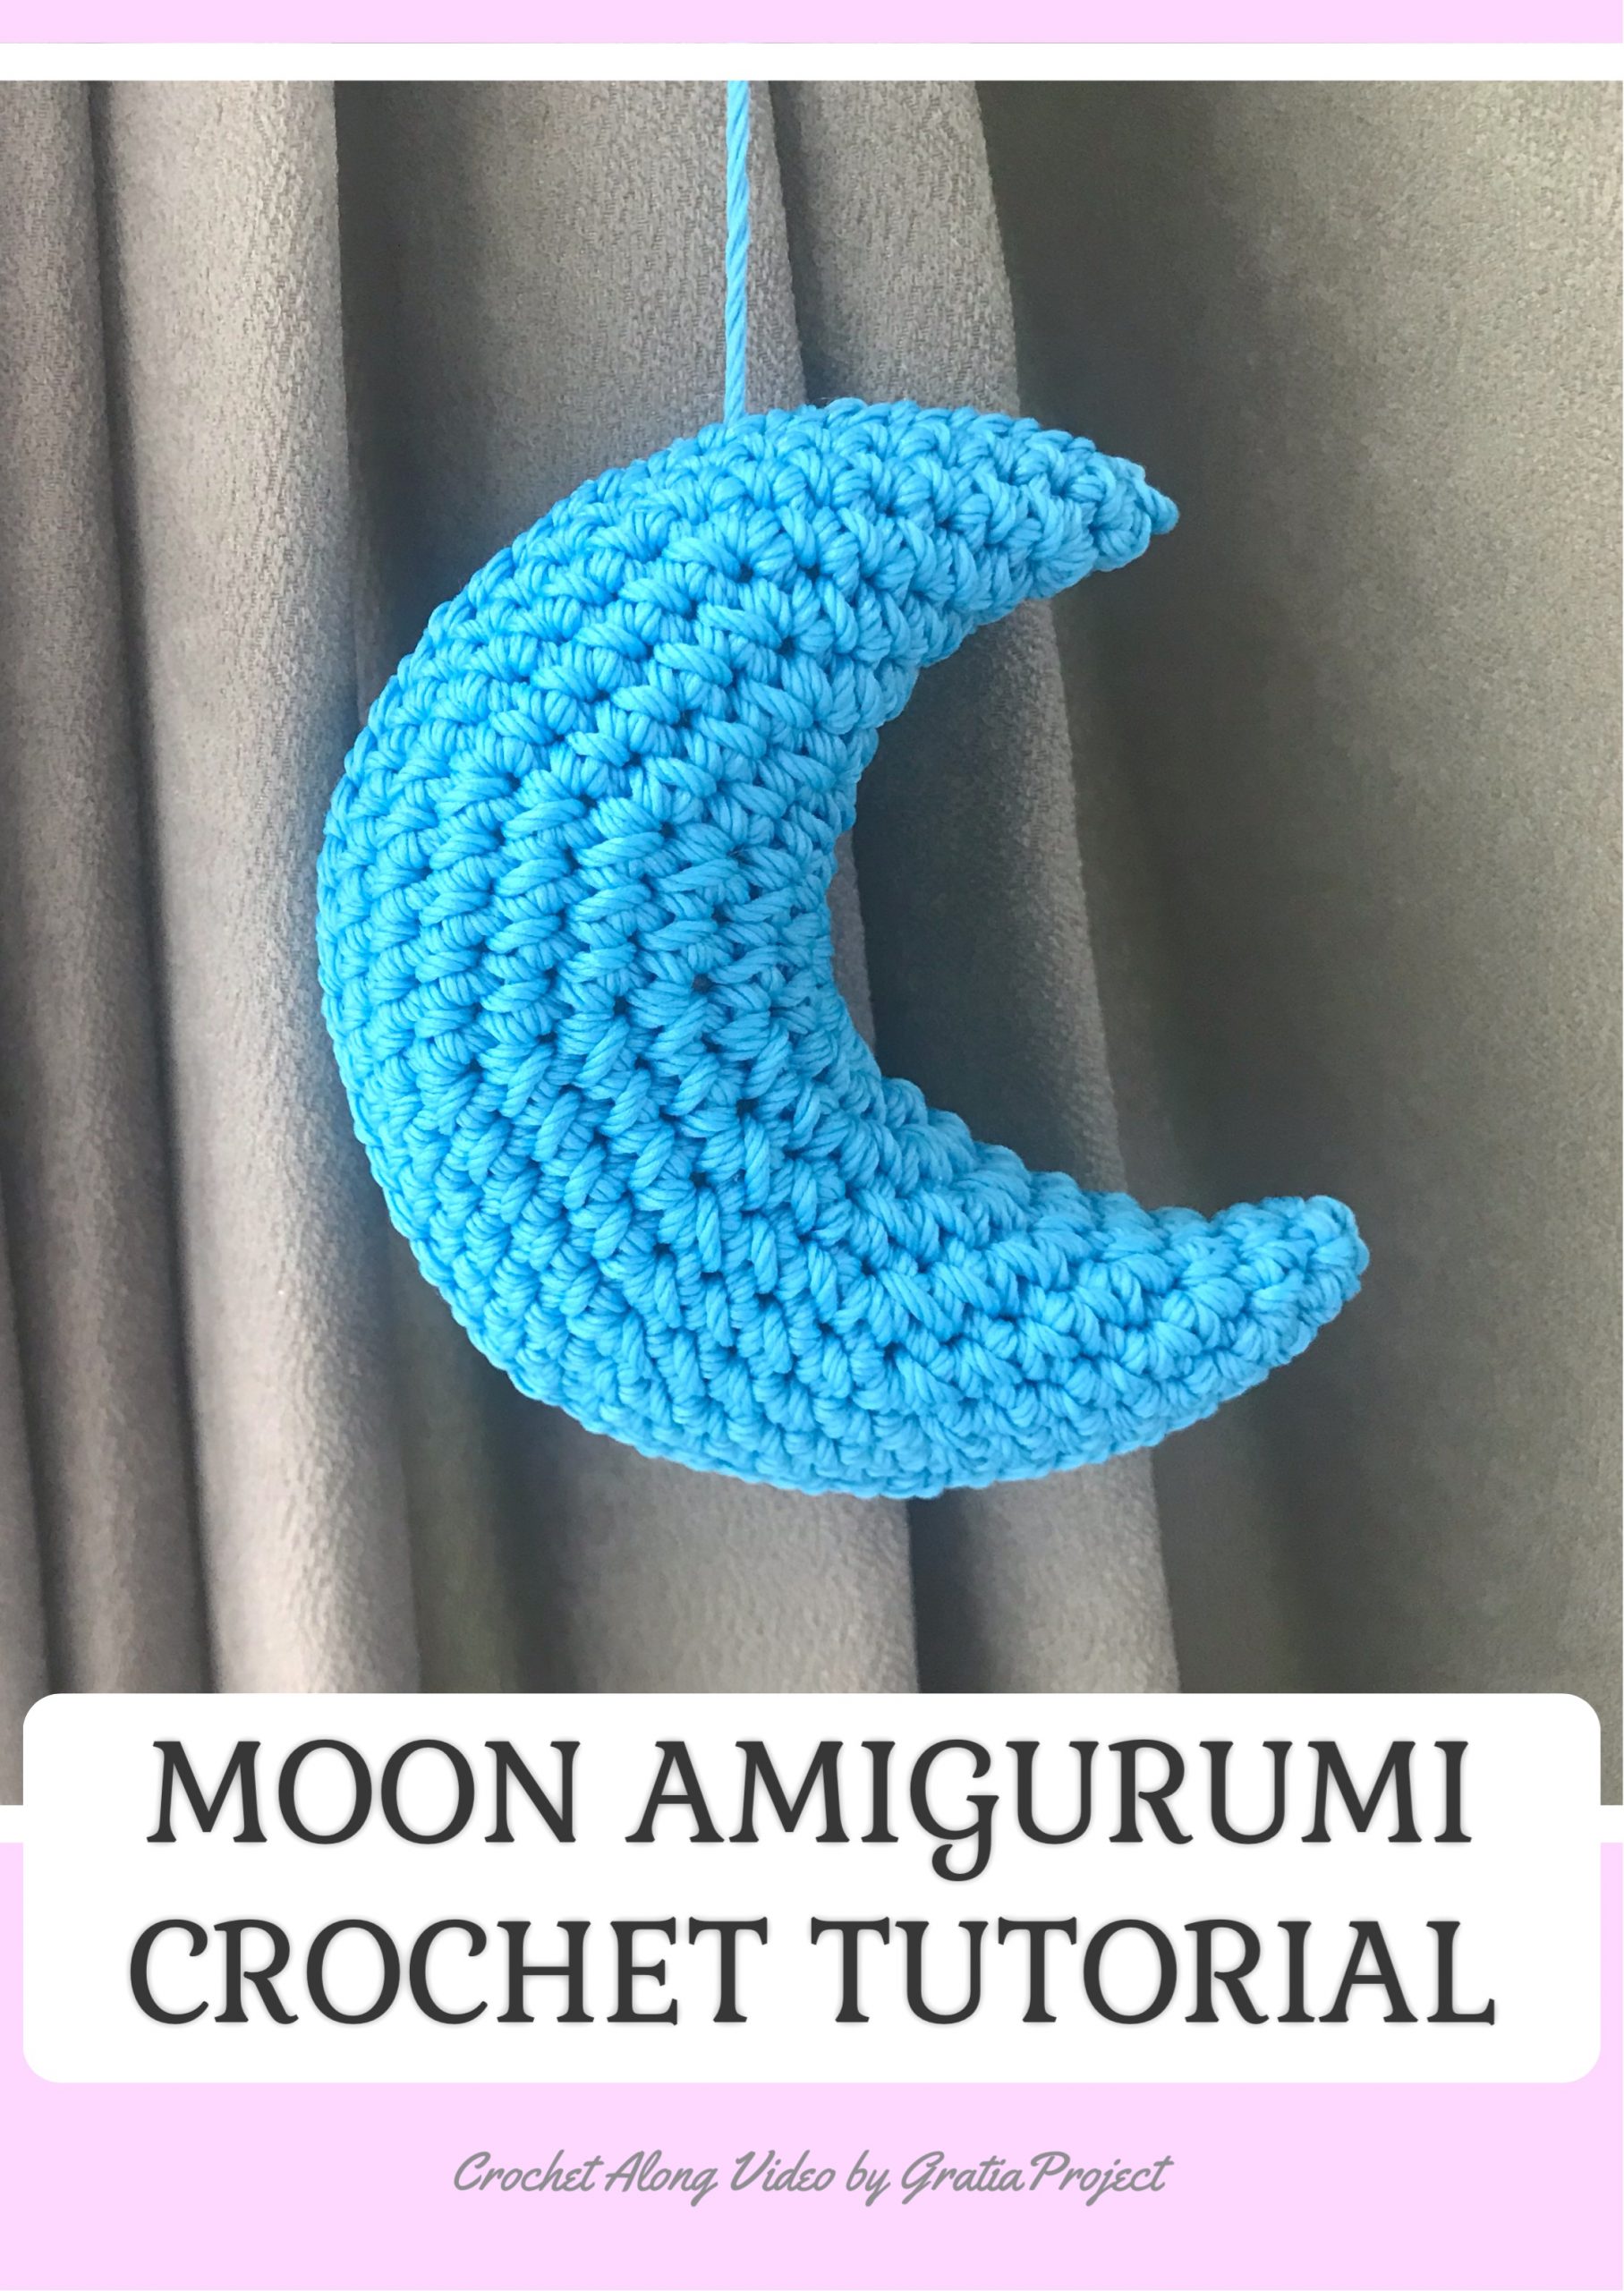 Moon Amigurumi Crochet Pattern | Crochet Along